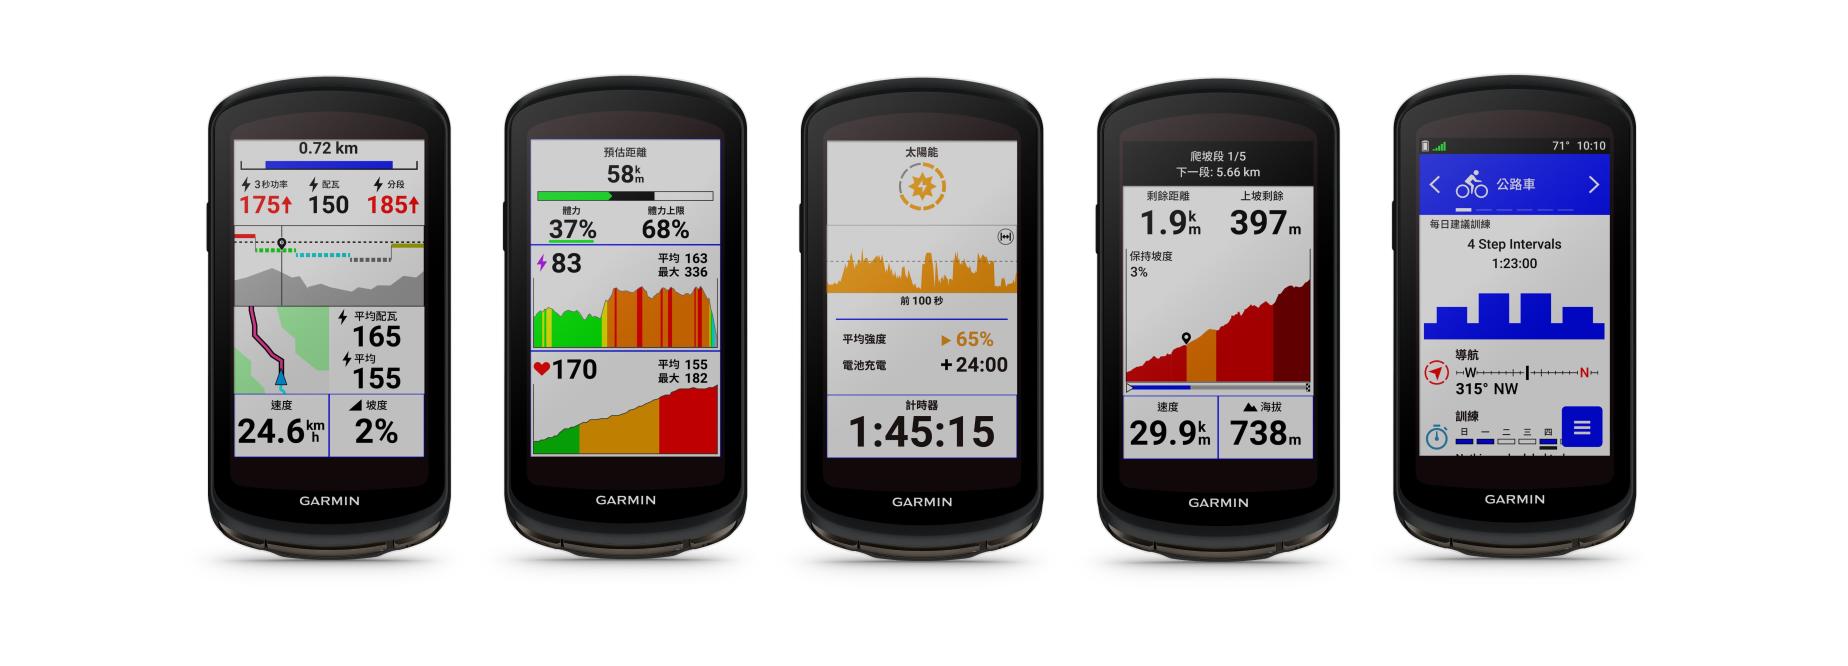 Garmin》自行車生態系三大新品齊發Edge 全新進化首款搭載太陽能